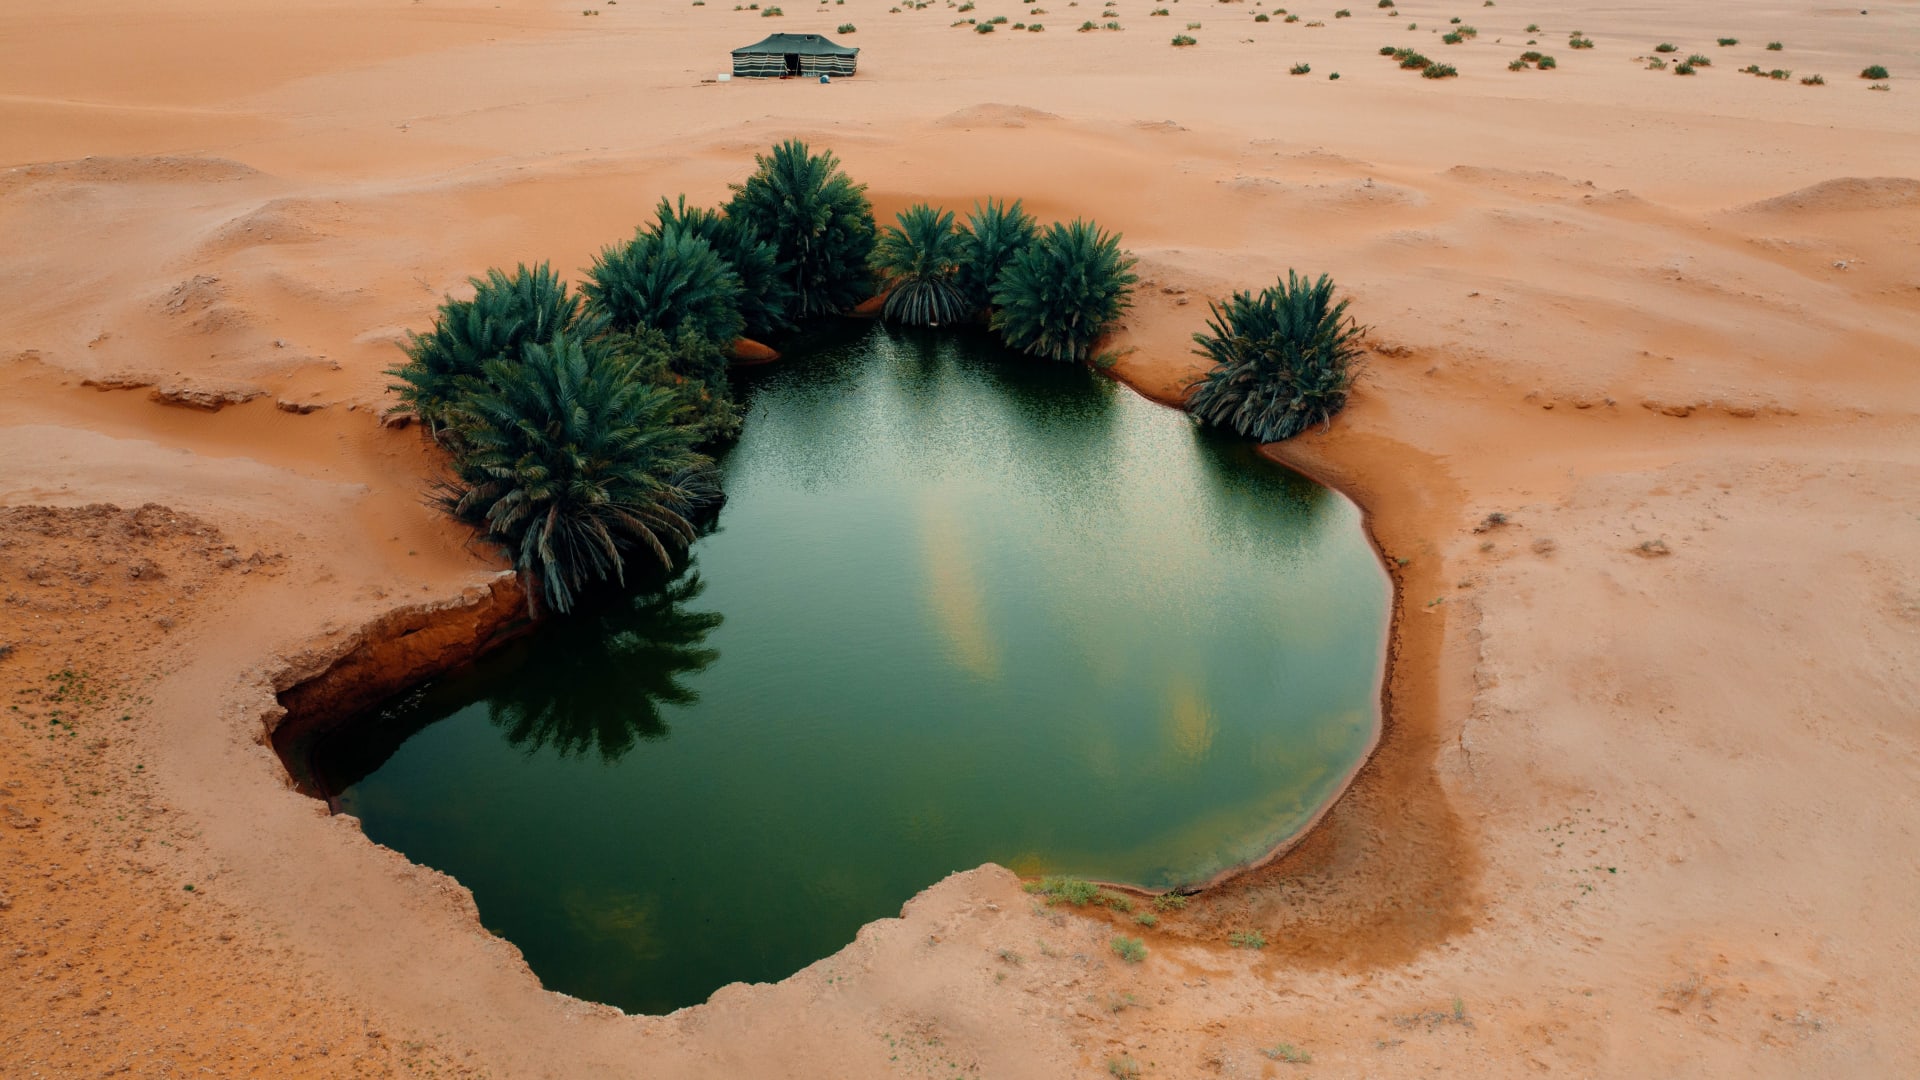 شاهد| اكتشاف واحة على شكل قلب تتوسط الكثبان الرملية بالصحراء السعودية